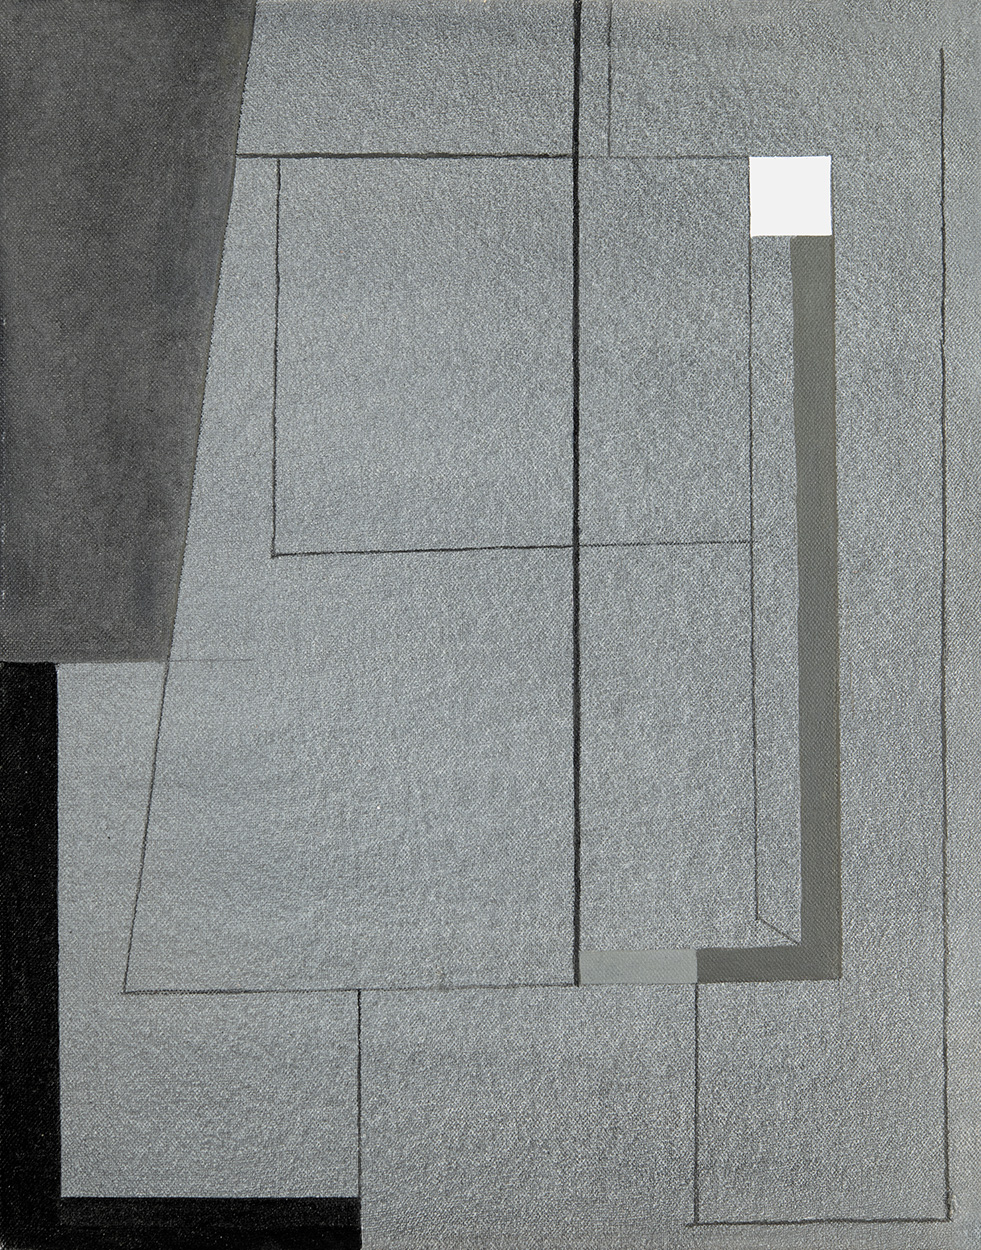 Konok Tamás (1930-2020) White Square, 2007